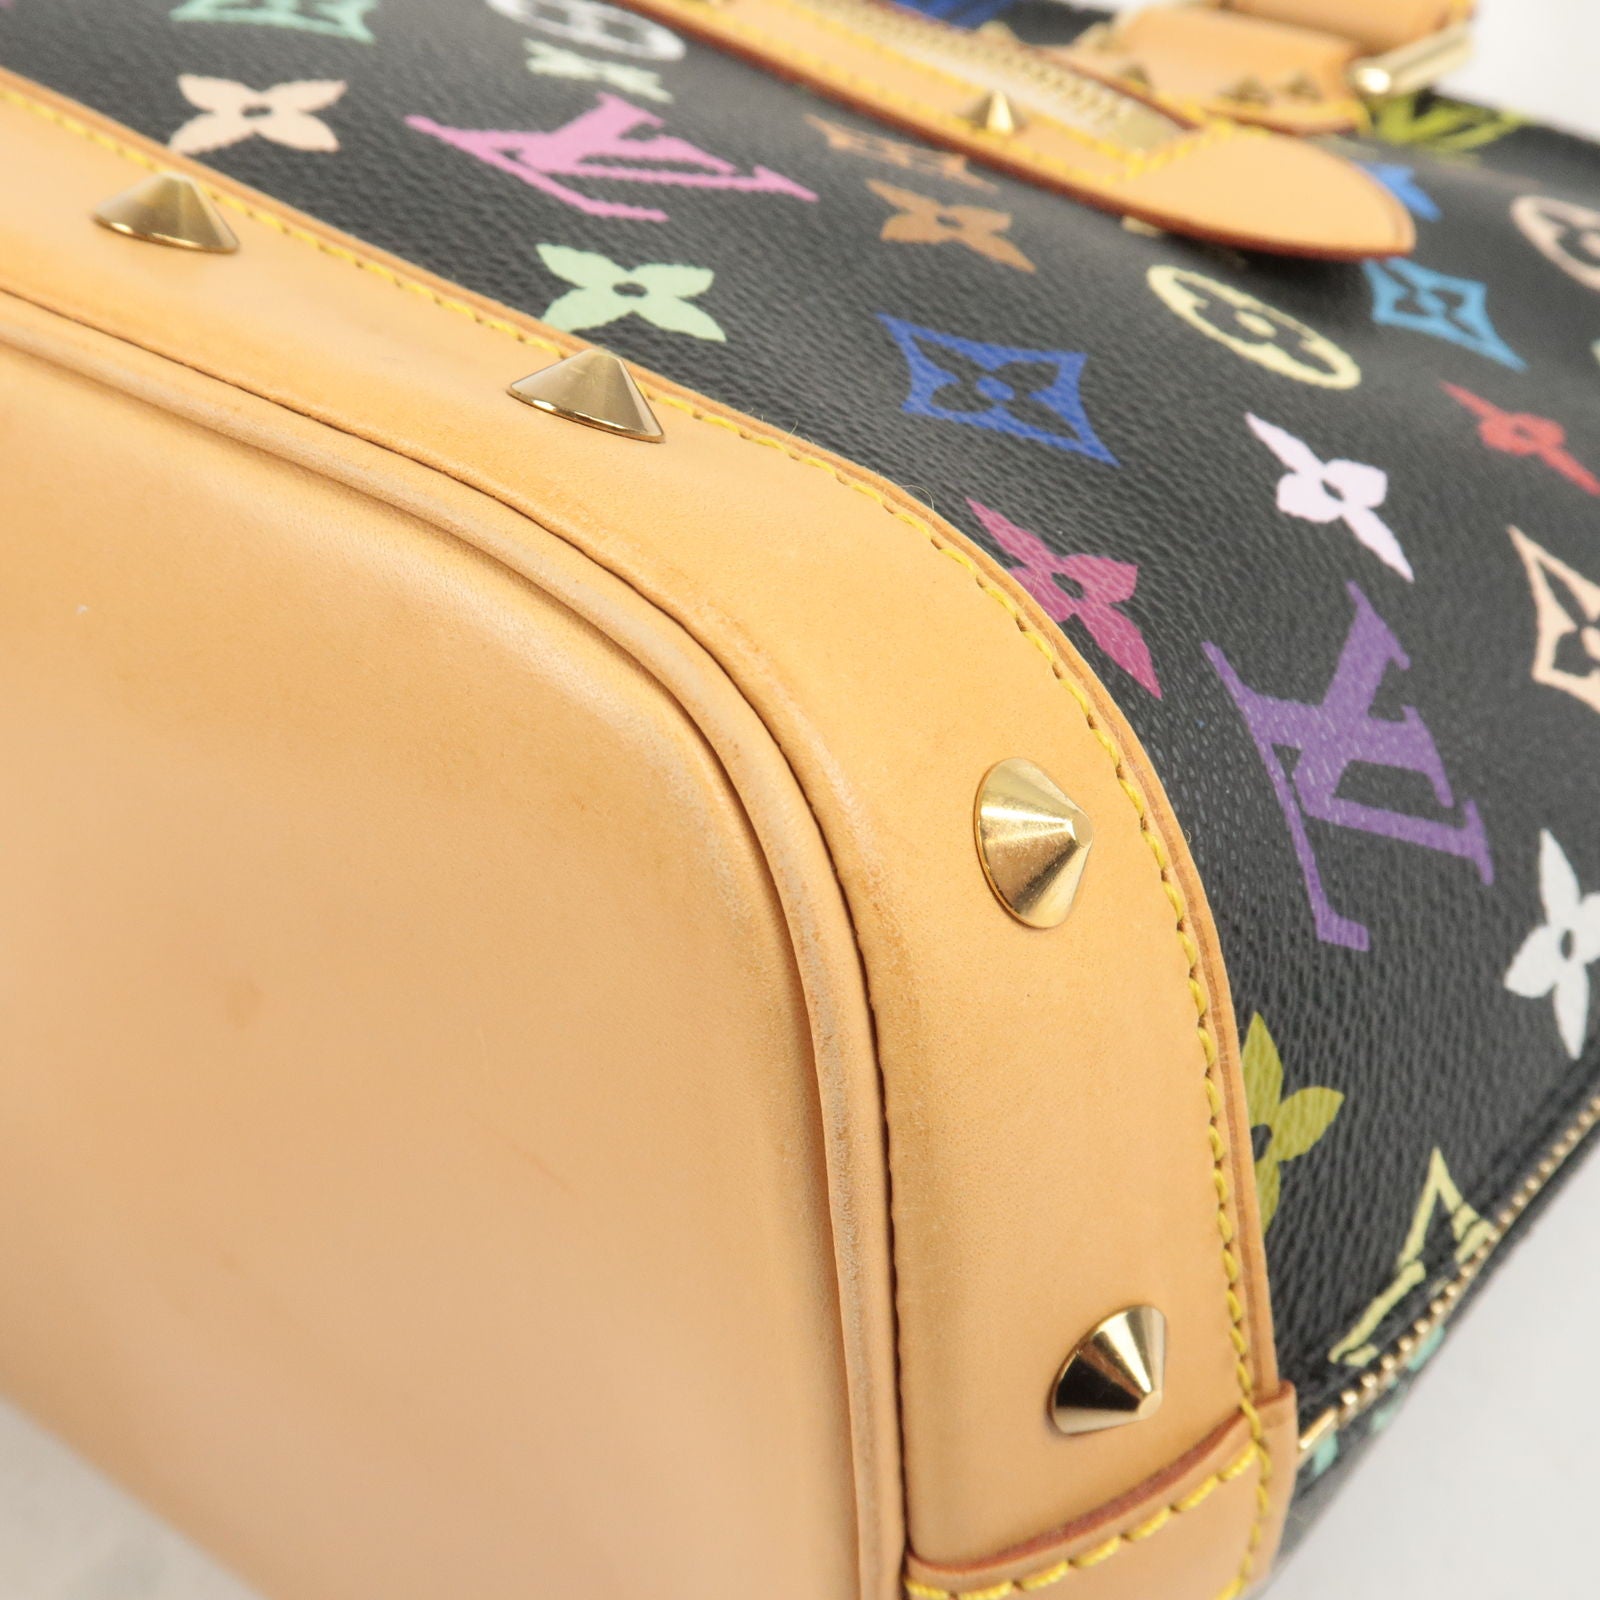 Louis Vuitton Multicolor Alma Bag